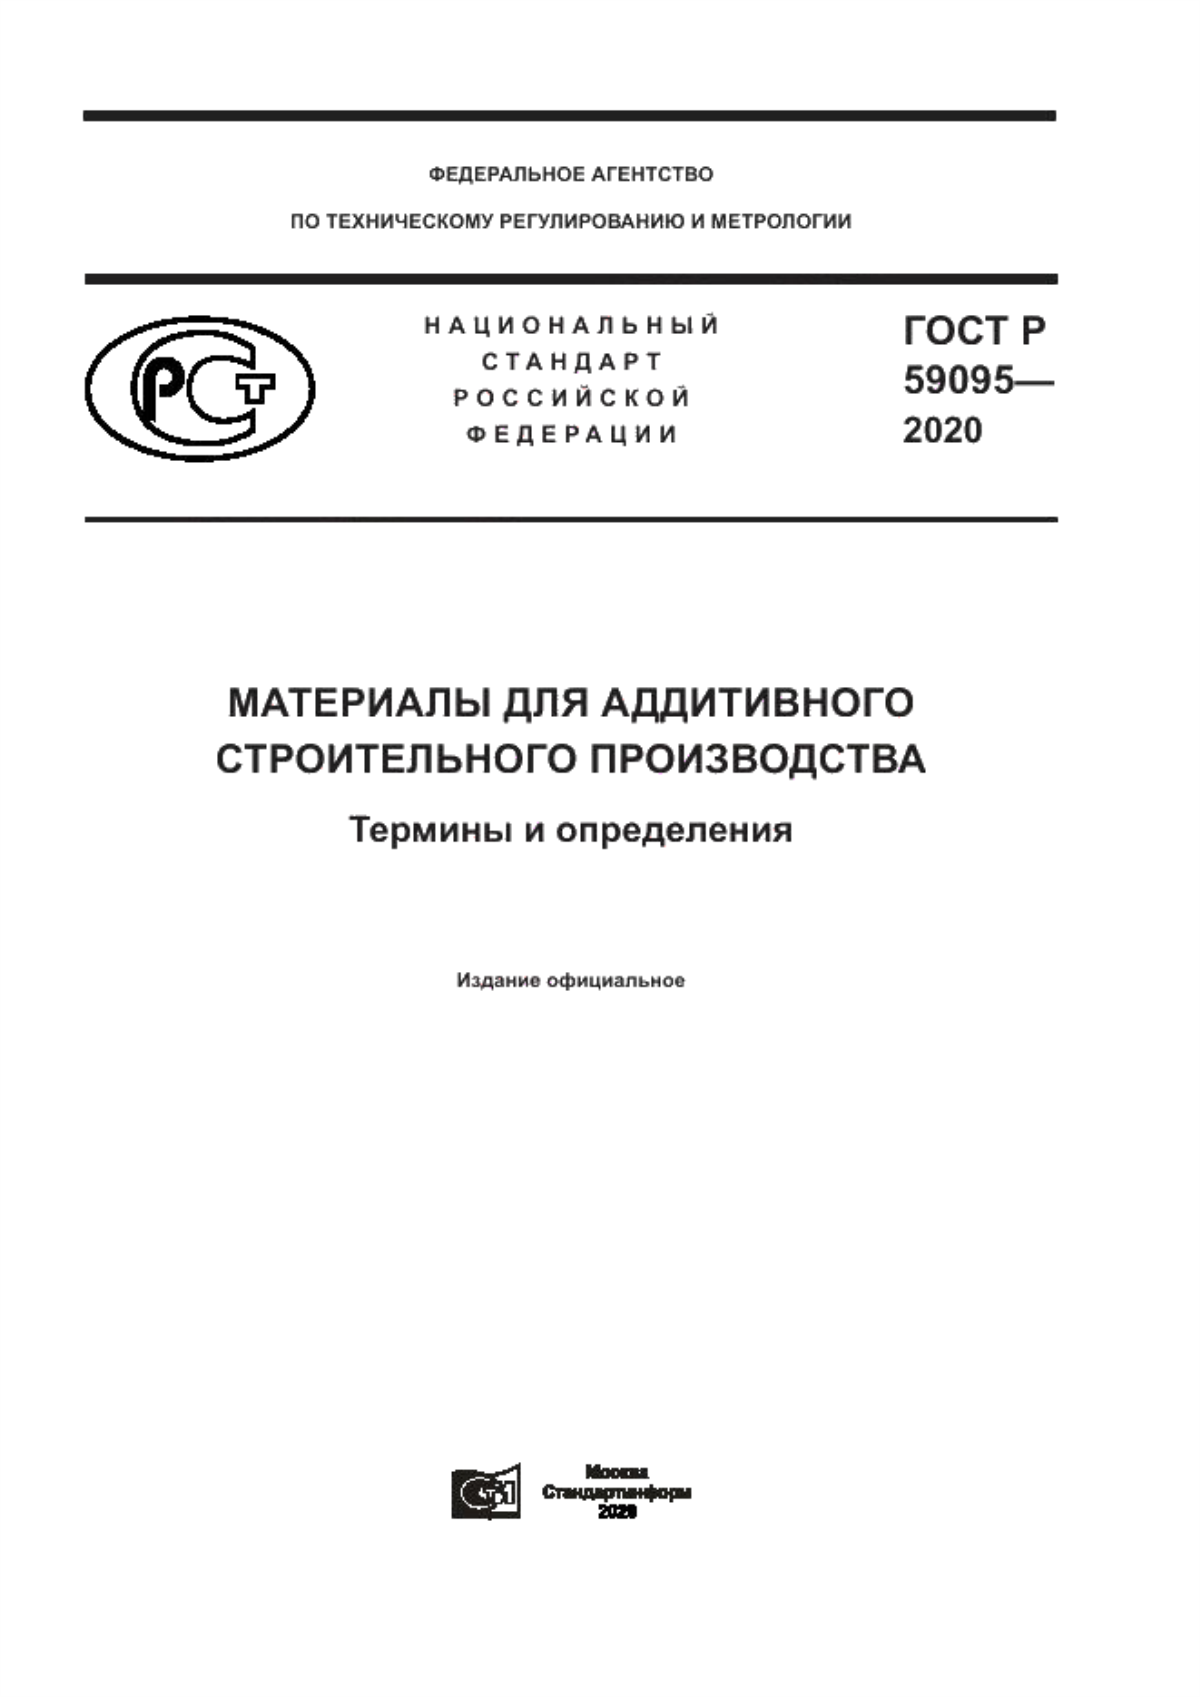 ГОСТ Р 59095-2020 Материалы для аддитивного строительного производства. Термины и определения